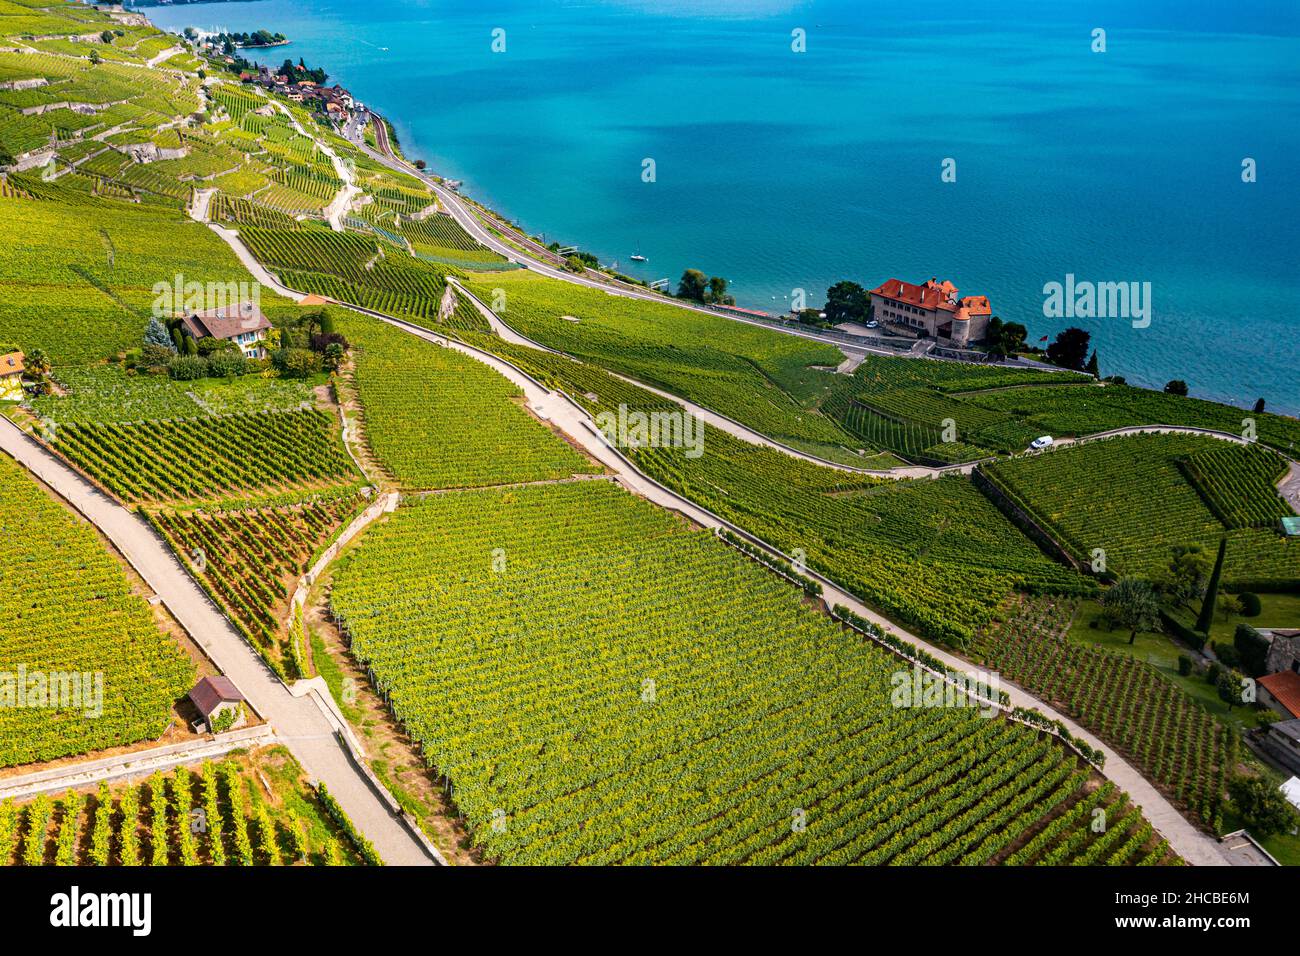 Suisse, canton de Vaud, vue aérienne des vignobles en terrasse de Lavaux en été Banque D'Images